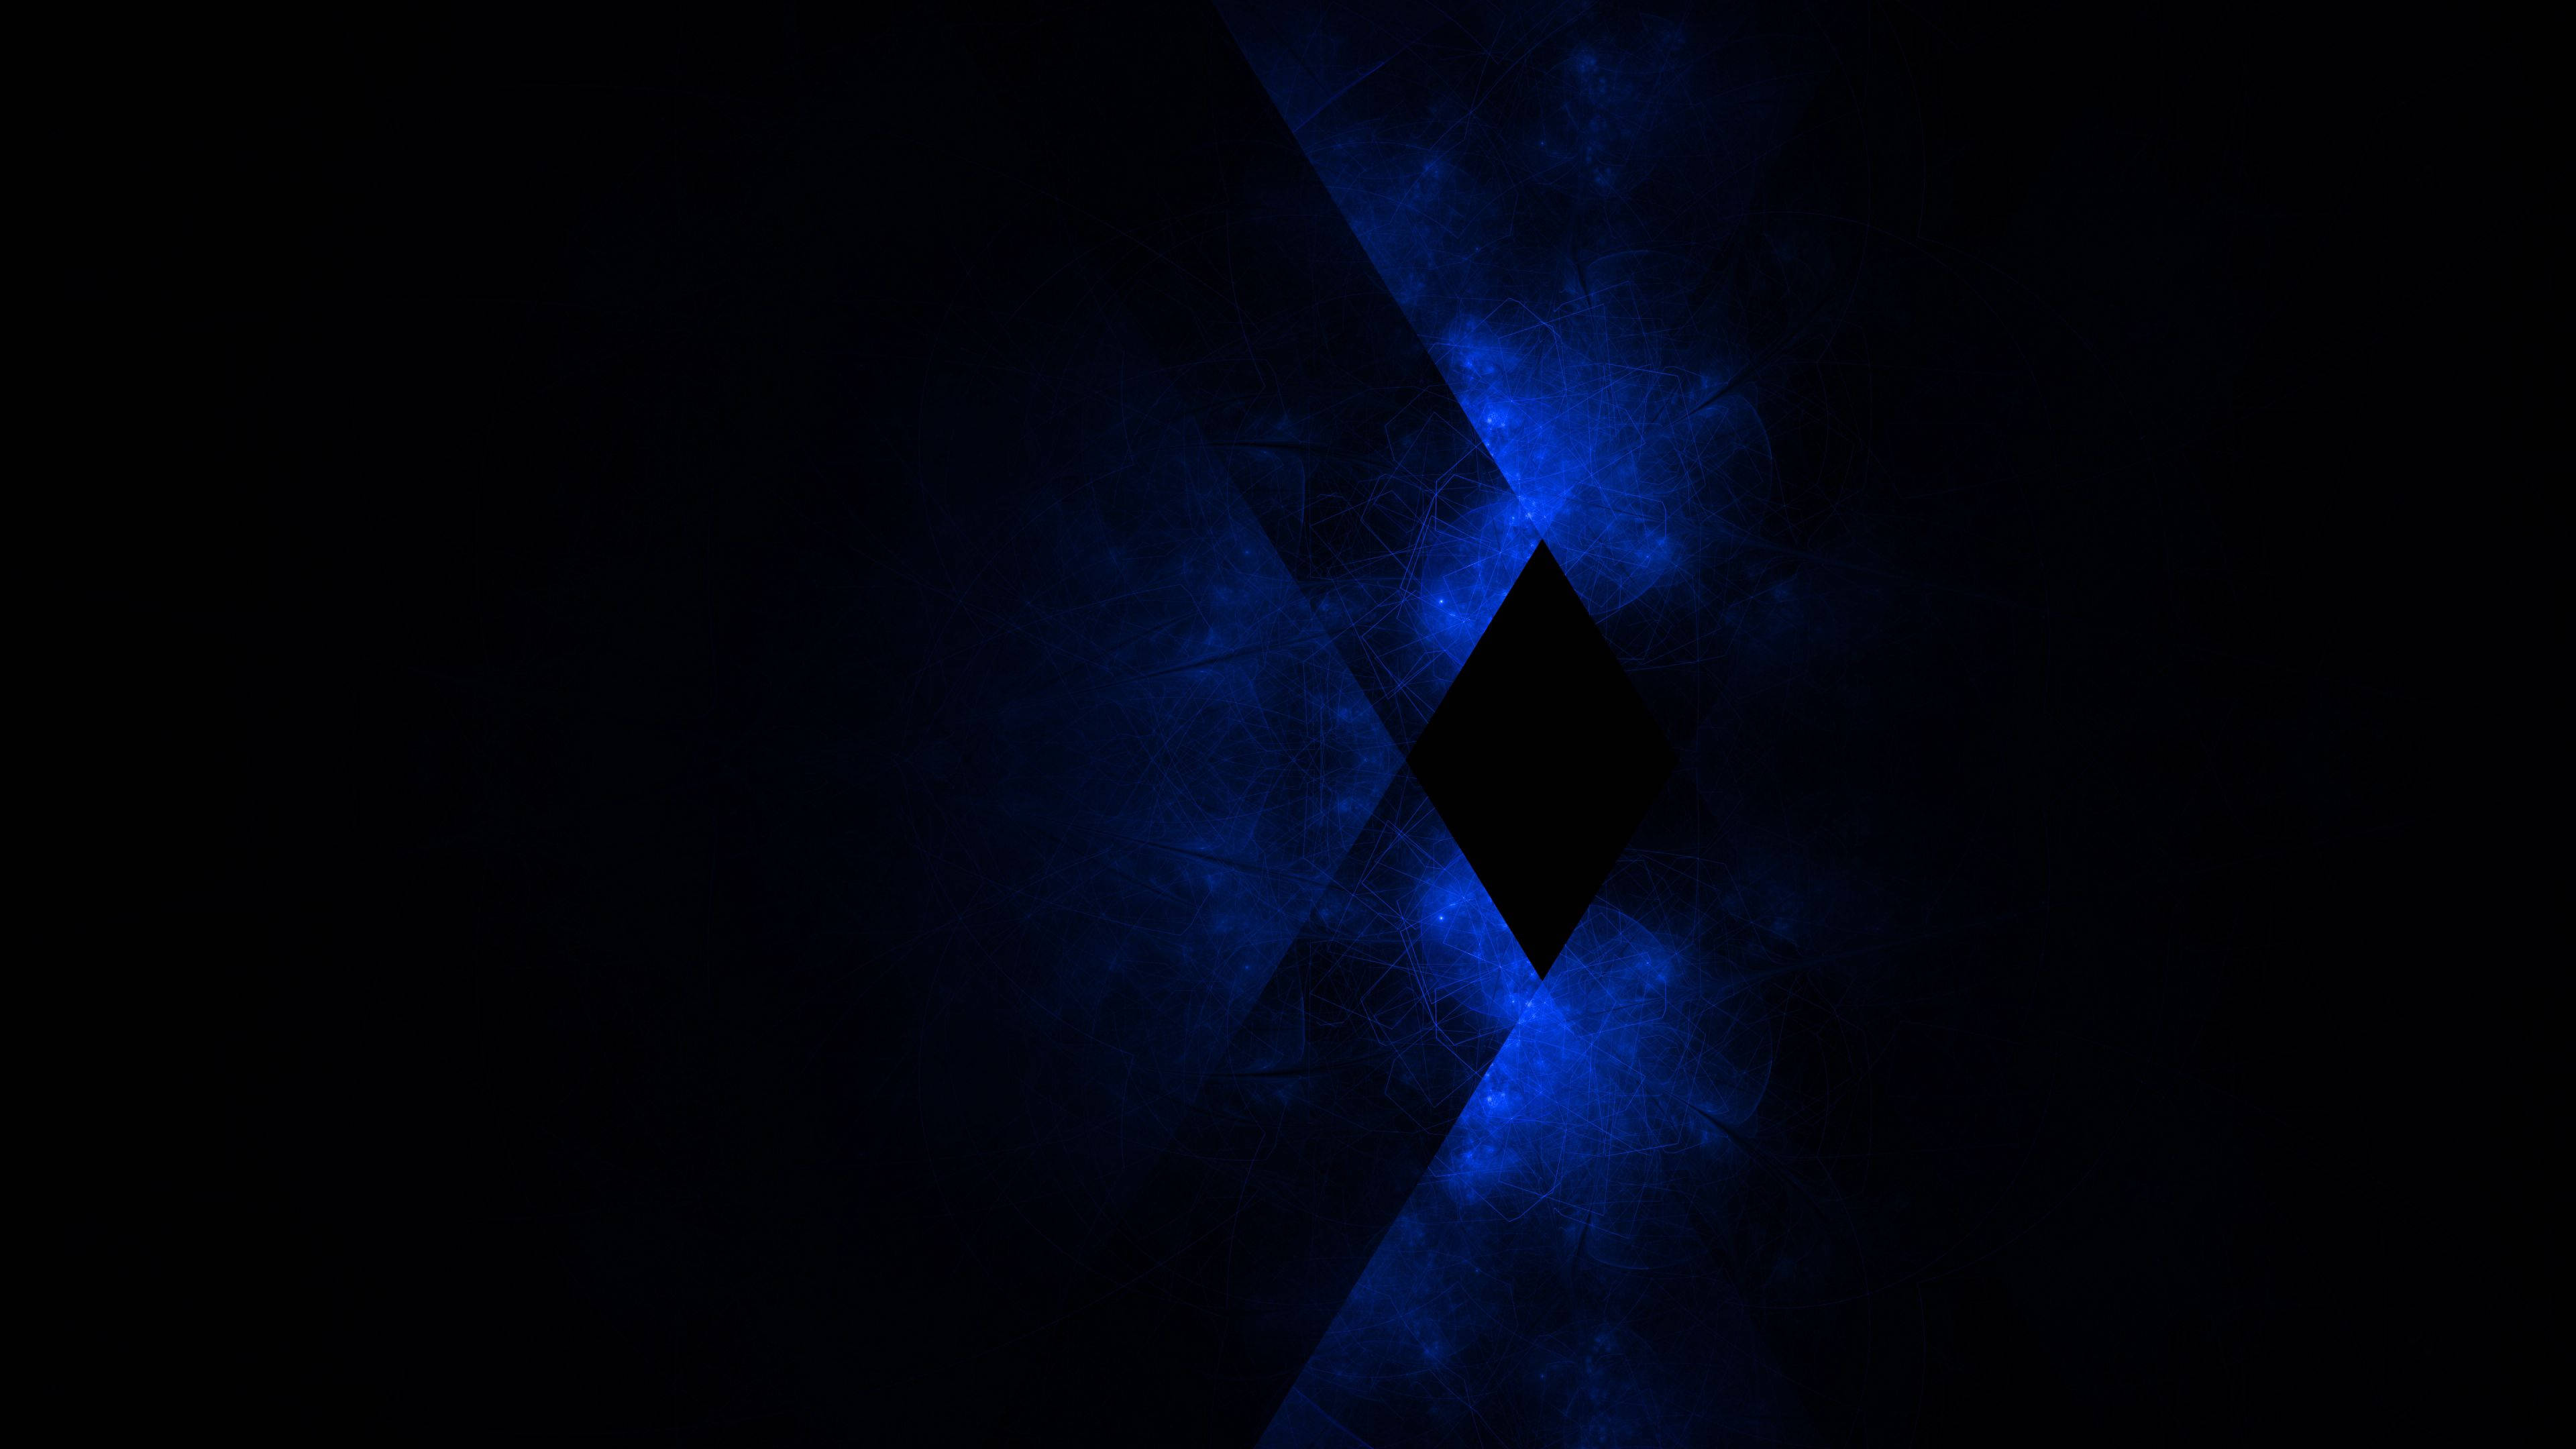 Diamond - Abstract gif avatar